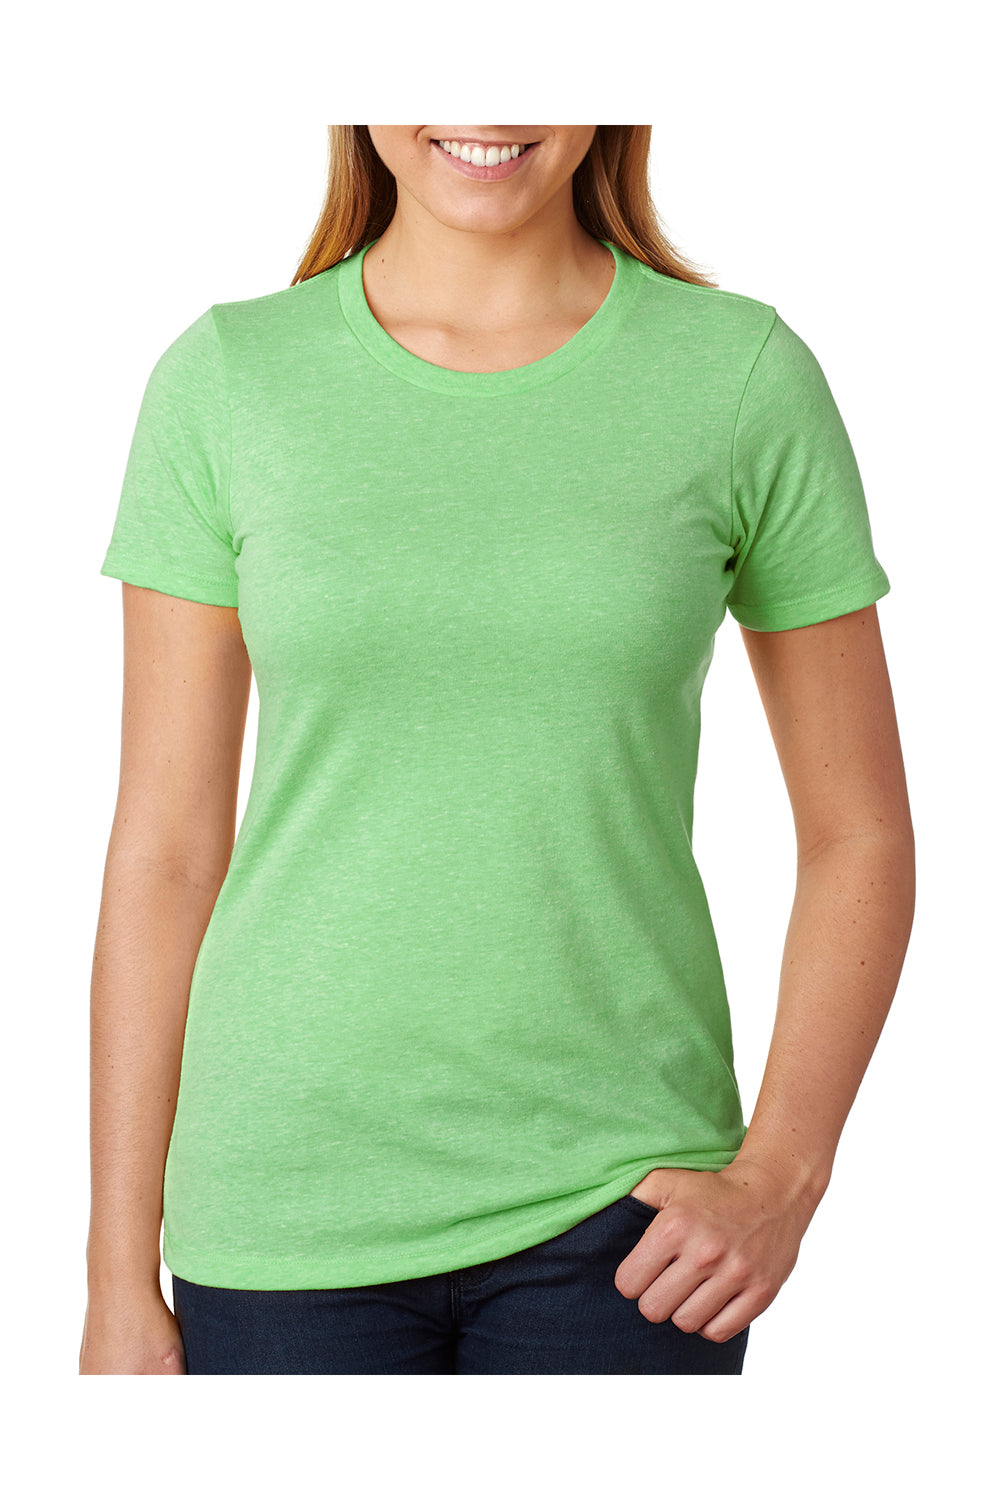 apple green shirt womens